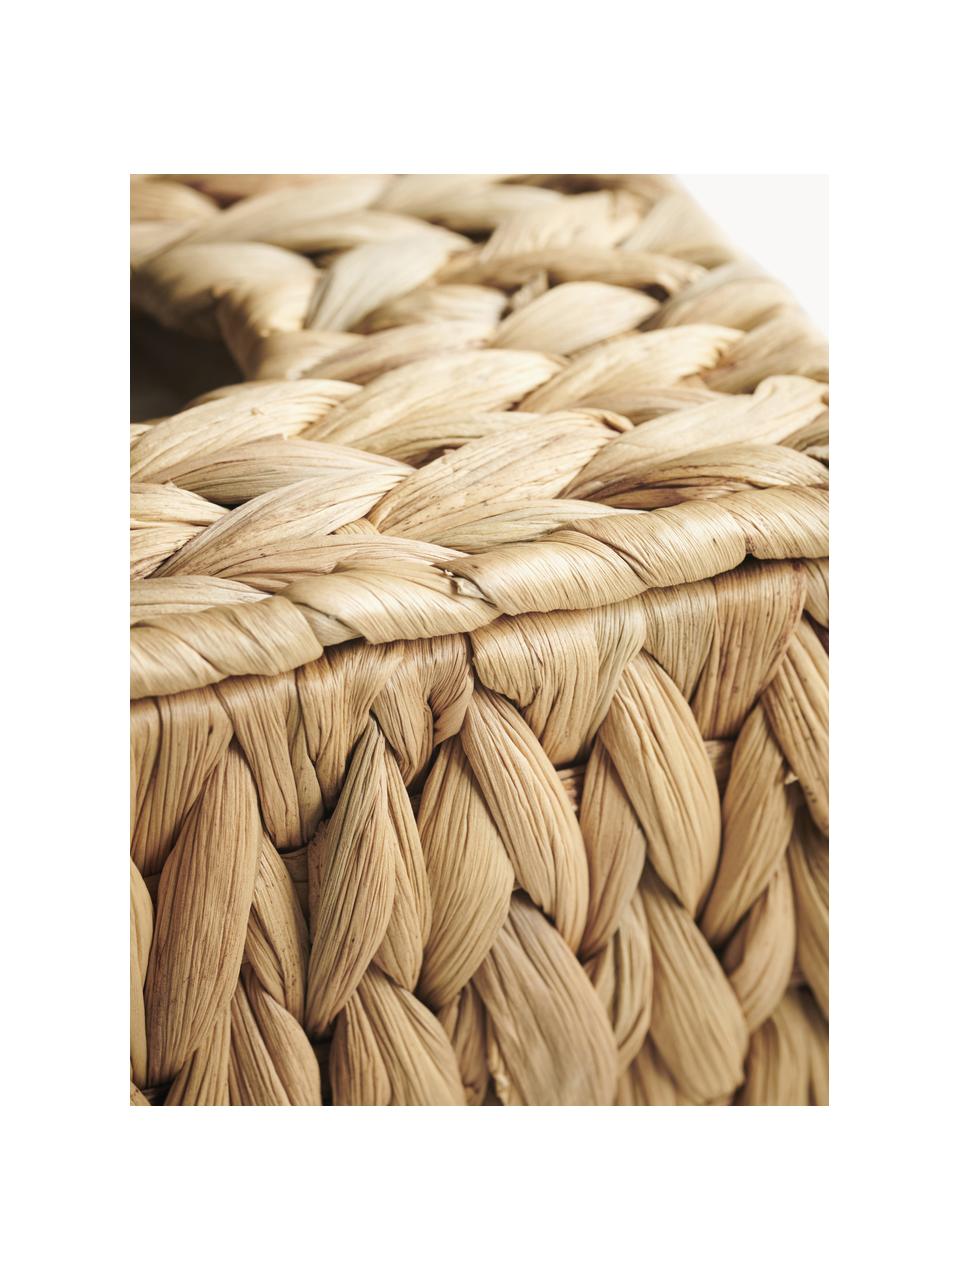 Porta fazzoletti in fibra naturale Cleana, Fibra naturale, Beige, Larg. 27 x Prof. 14 cm